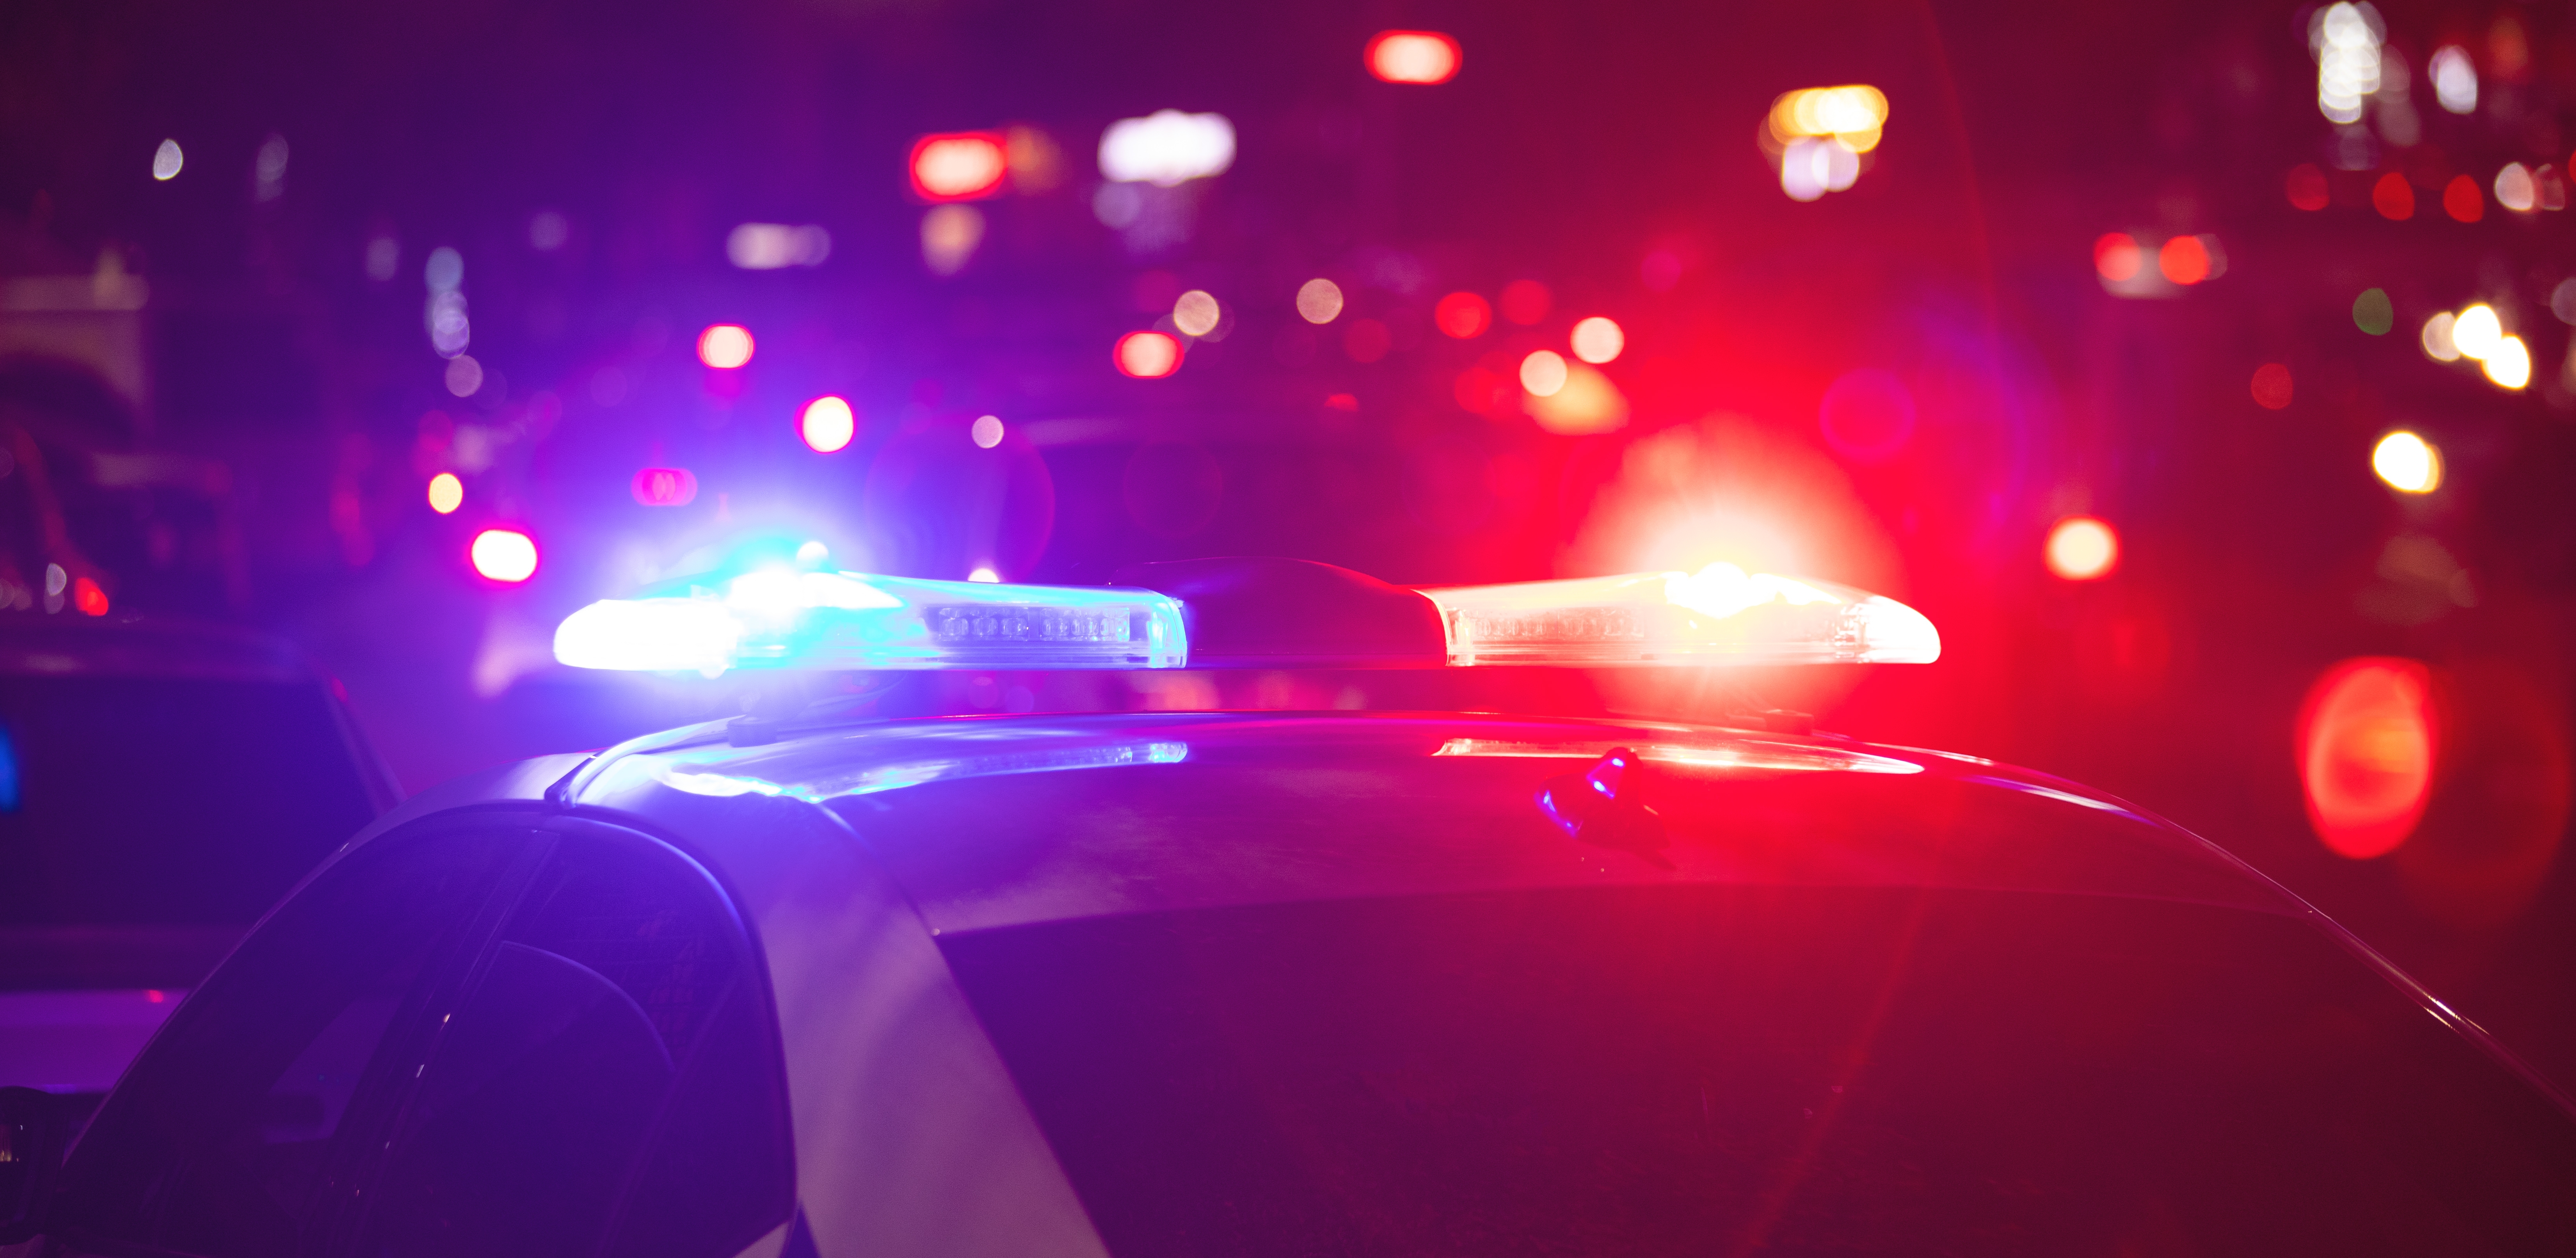 Ein beleuchtetes Polizeiauto | Quelle: Shutterstock